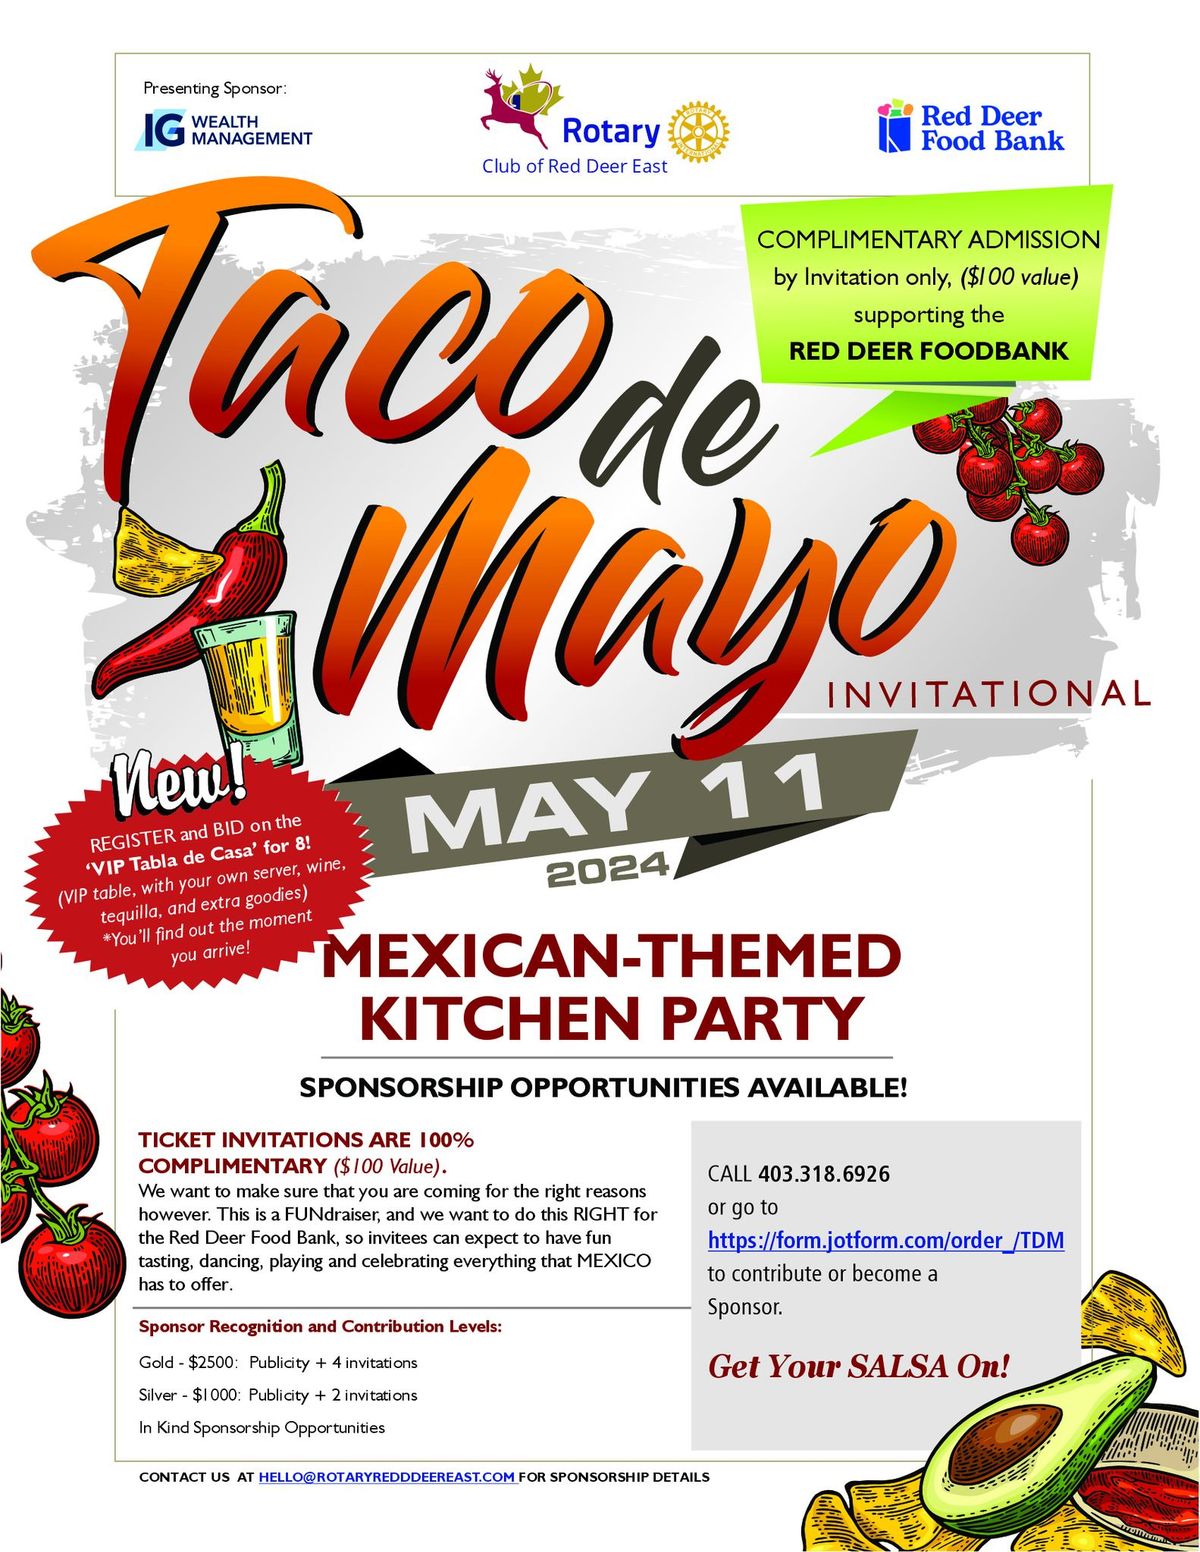 Taco de Mayo Invitational